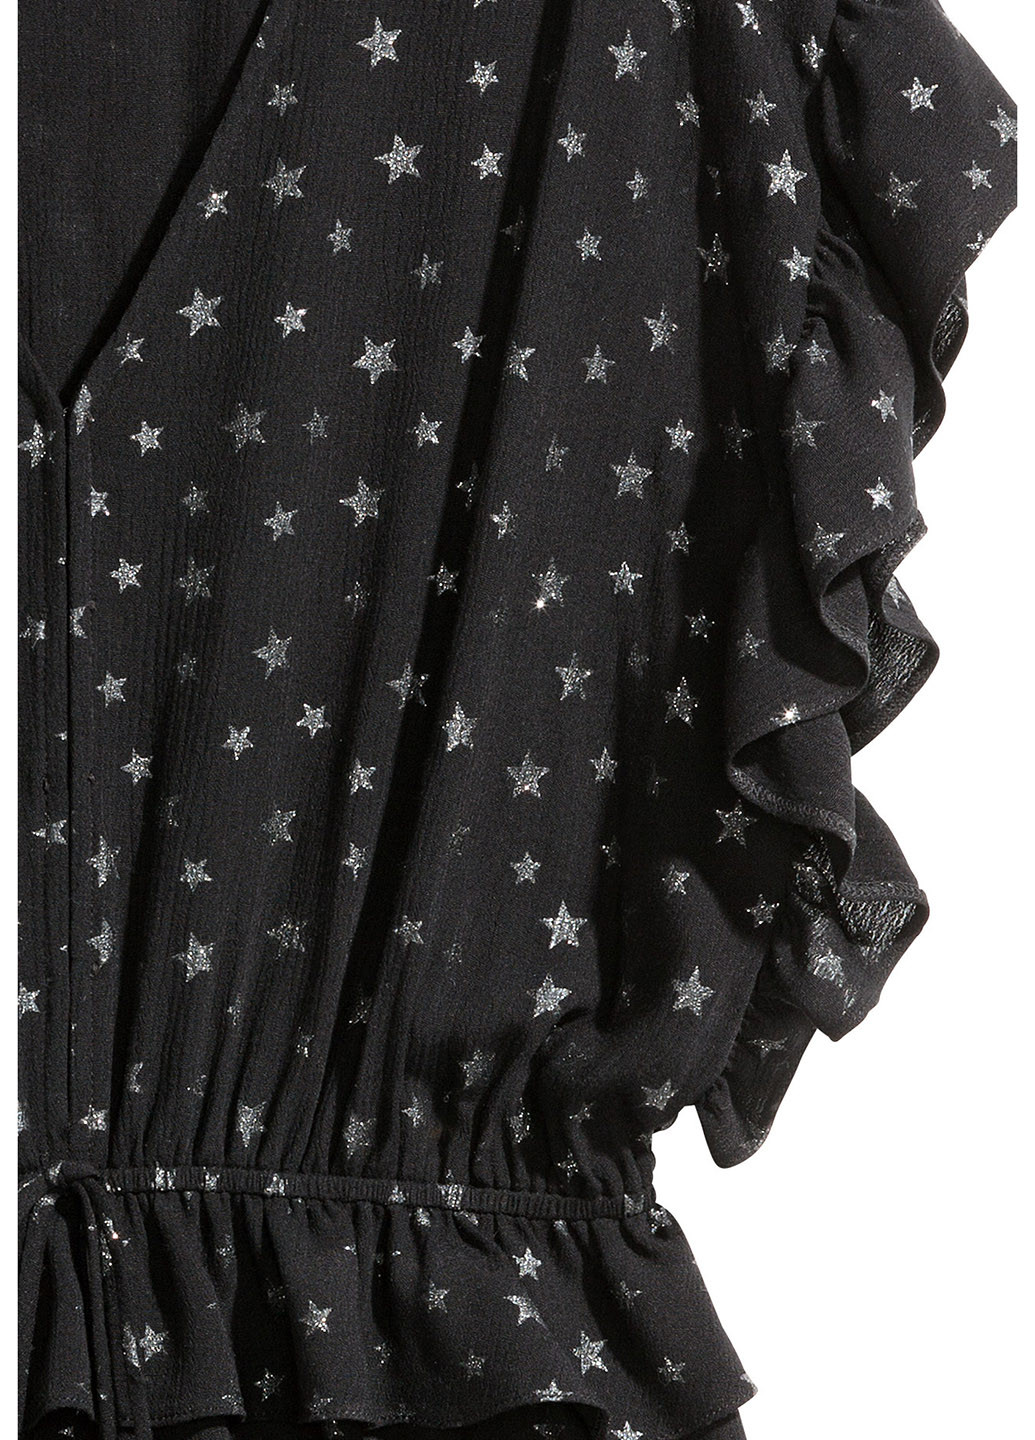 Комбинезон H&M комбинезон-шорты рисунок чёрный кэжуал вискоза